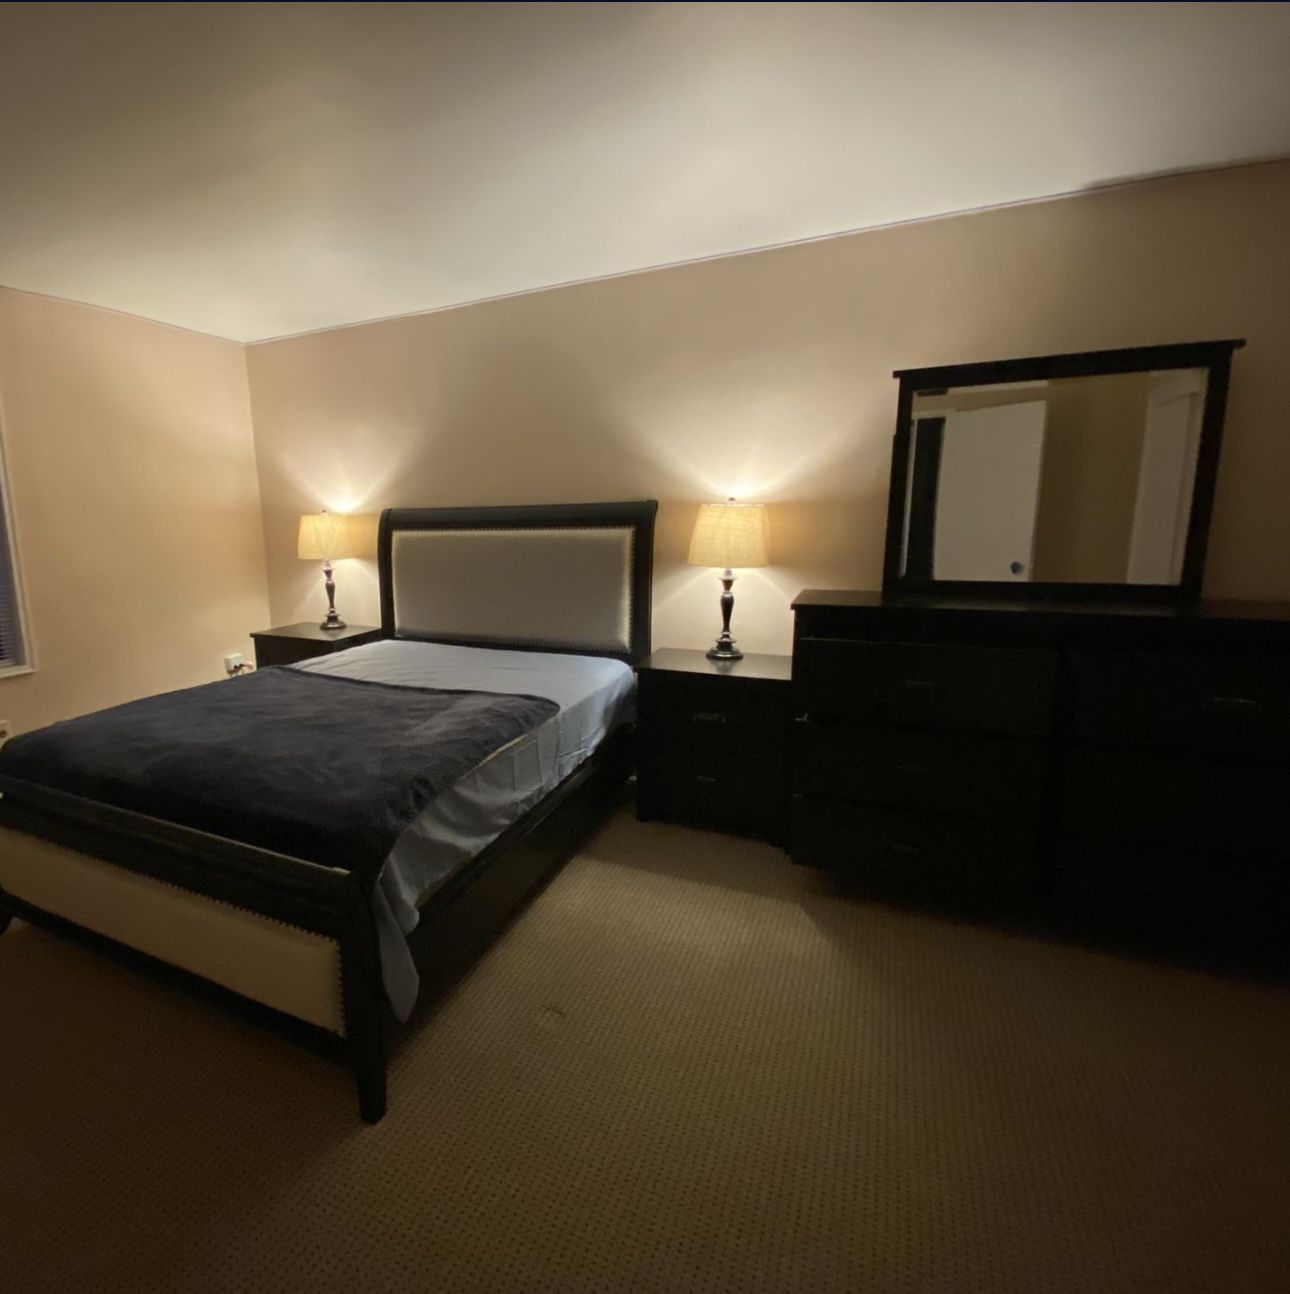 Queen-size bedroom set